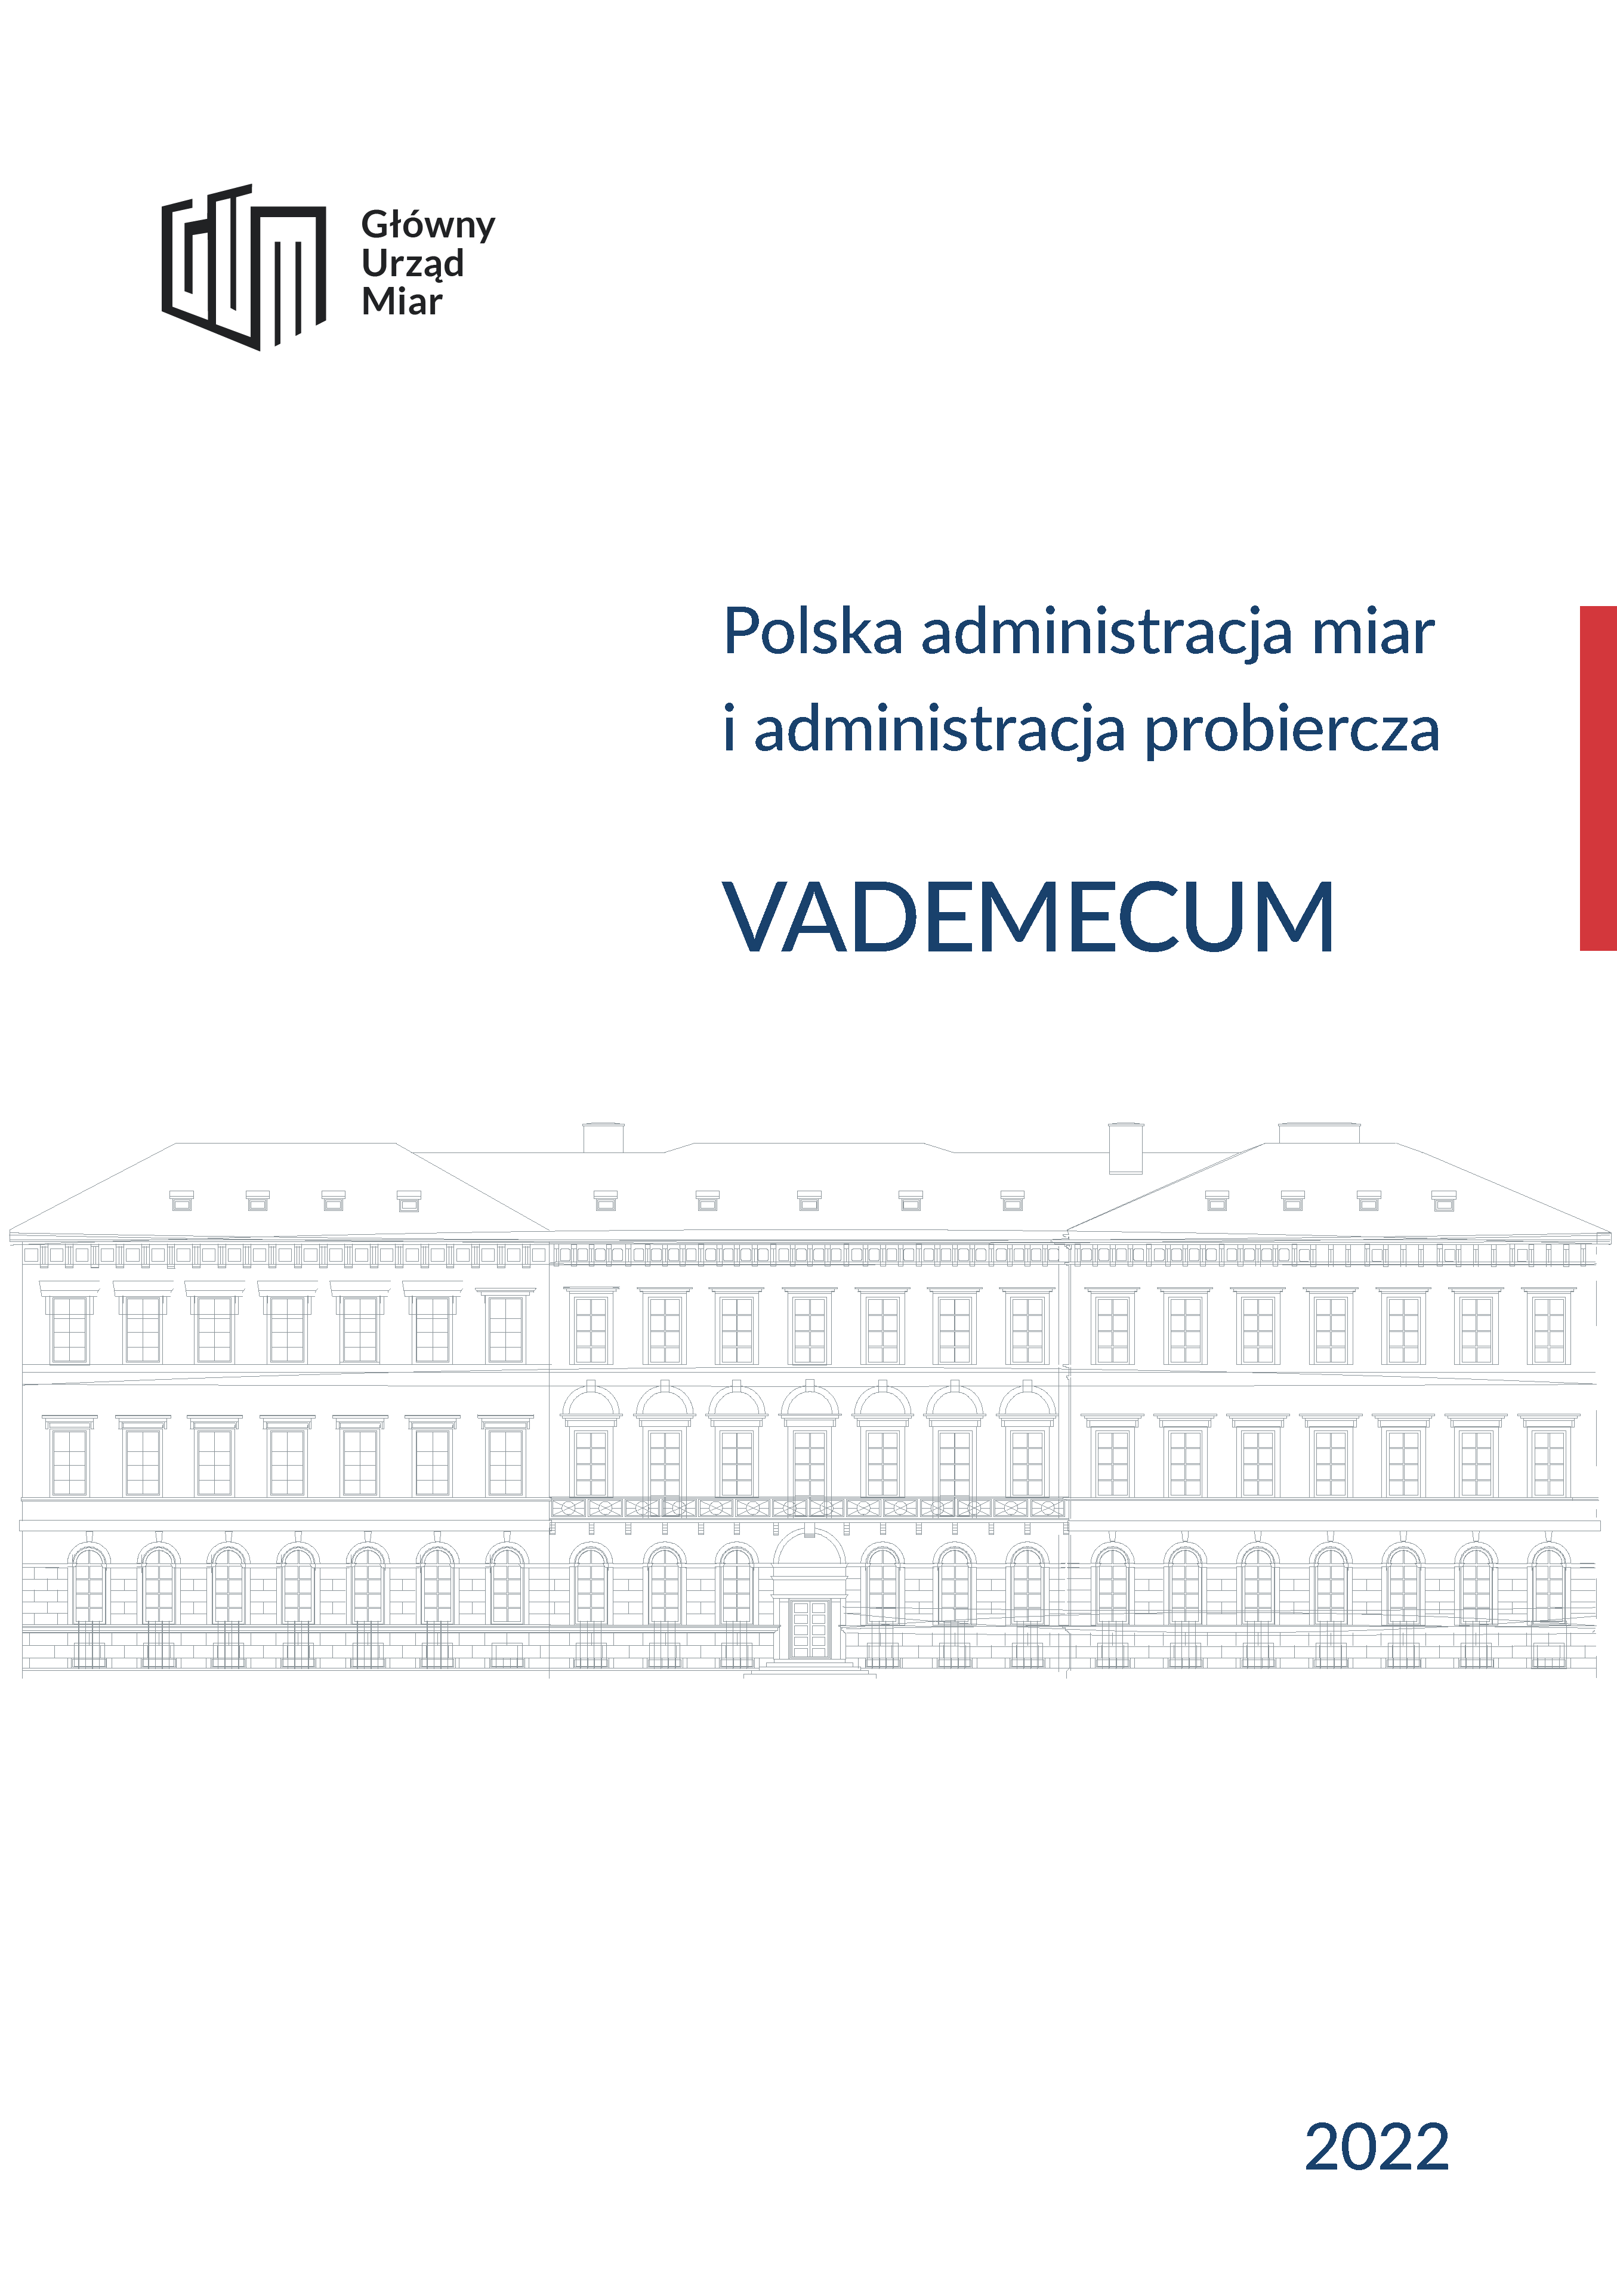 Okładka publikacji Vademecum. Na białym tle grafika budynku, nad tym tytuł publikacji, logo GUM.